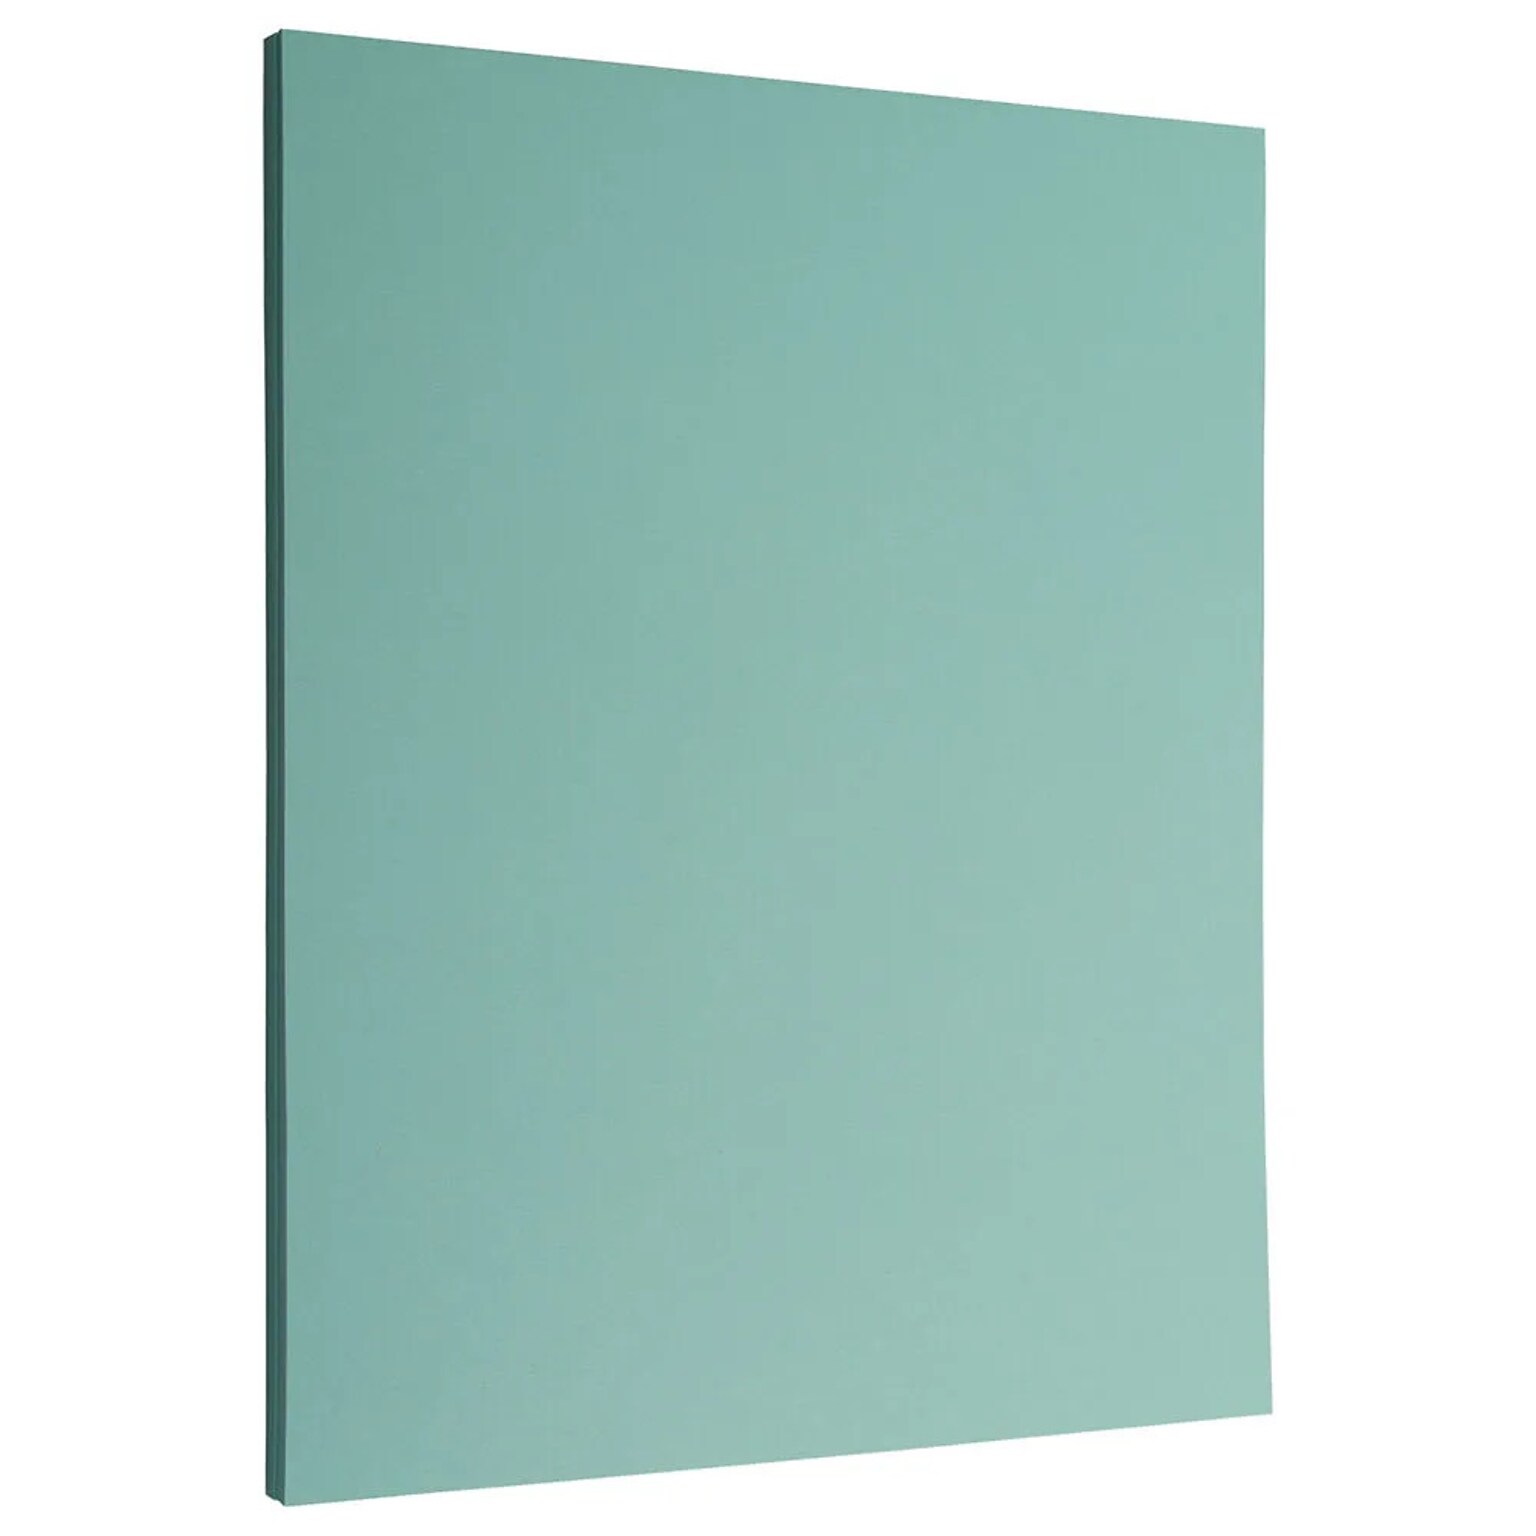 JAM Paper 8.5 x 11, 28 lbs., Aqua Blue, 100 Sheets/Ream (1524369G)